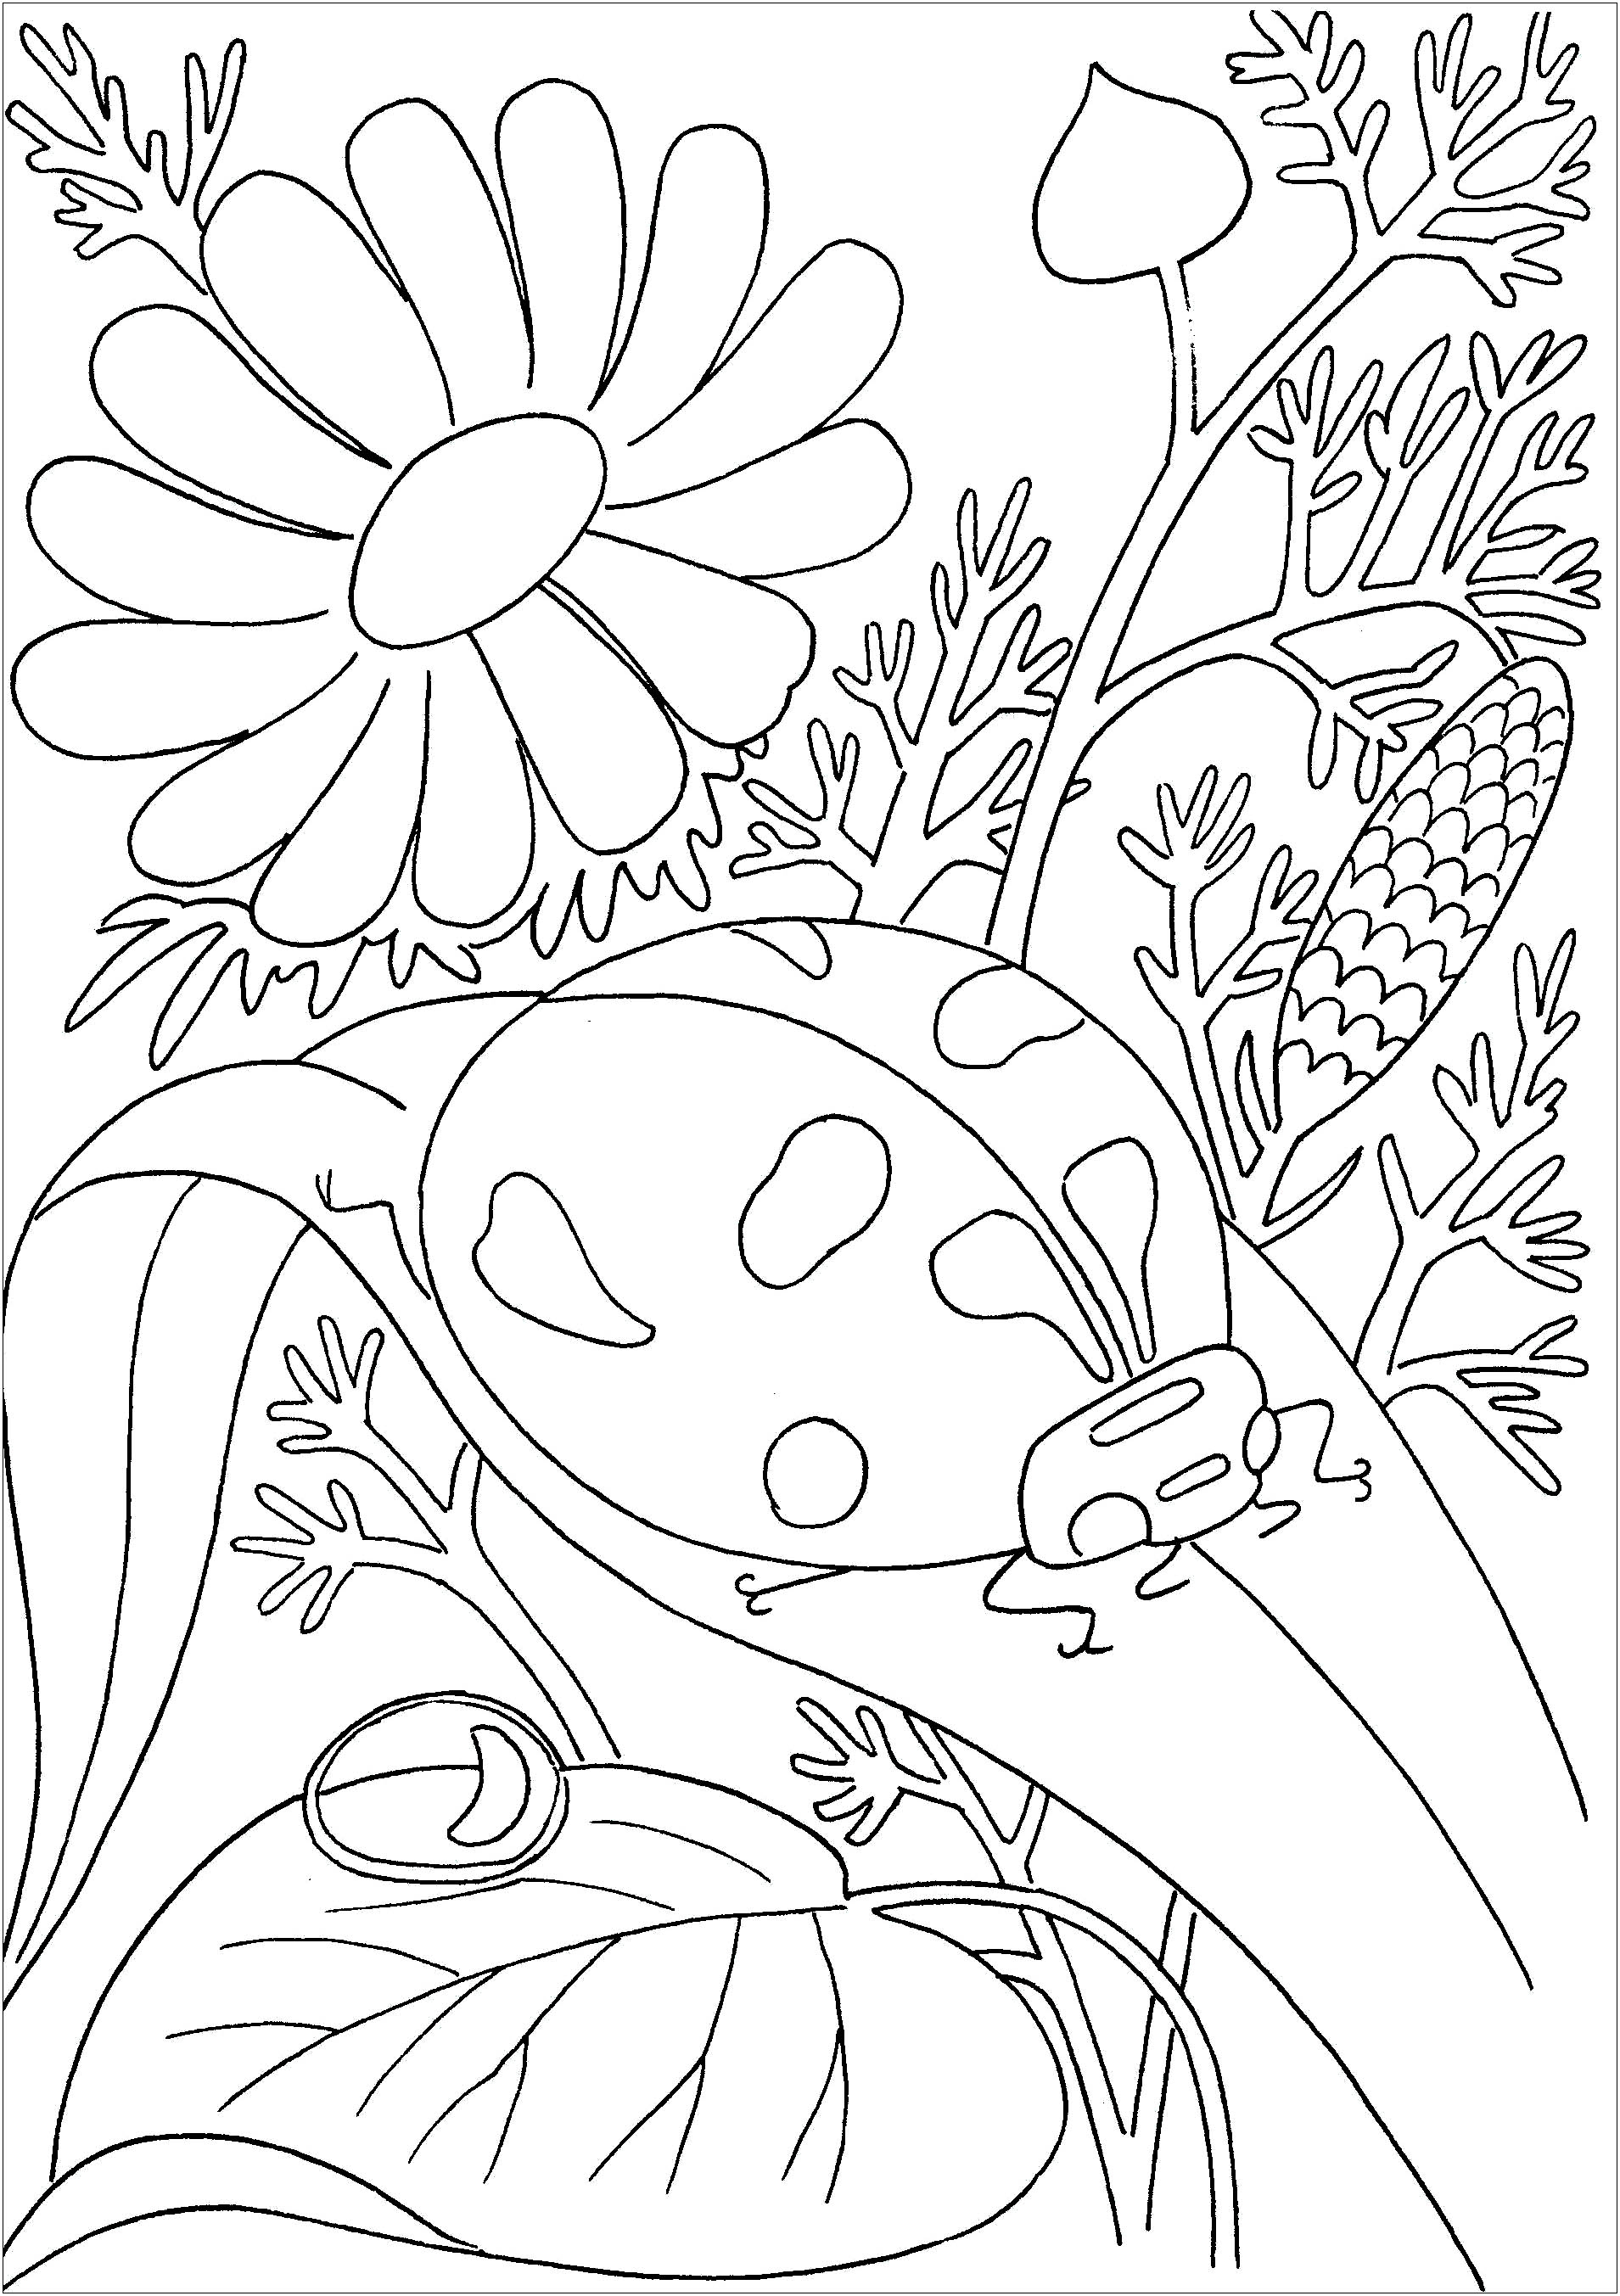 A joaninha caminha no seu ramo rodeada de flores.